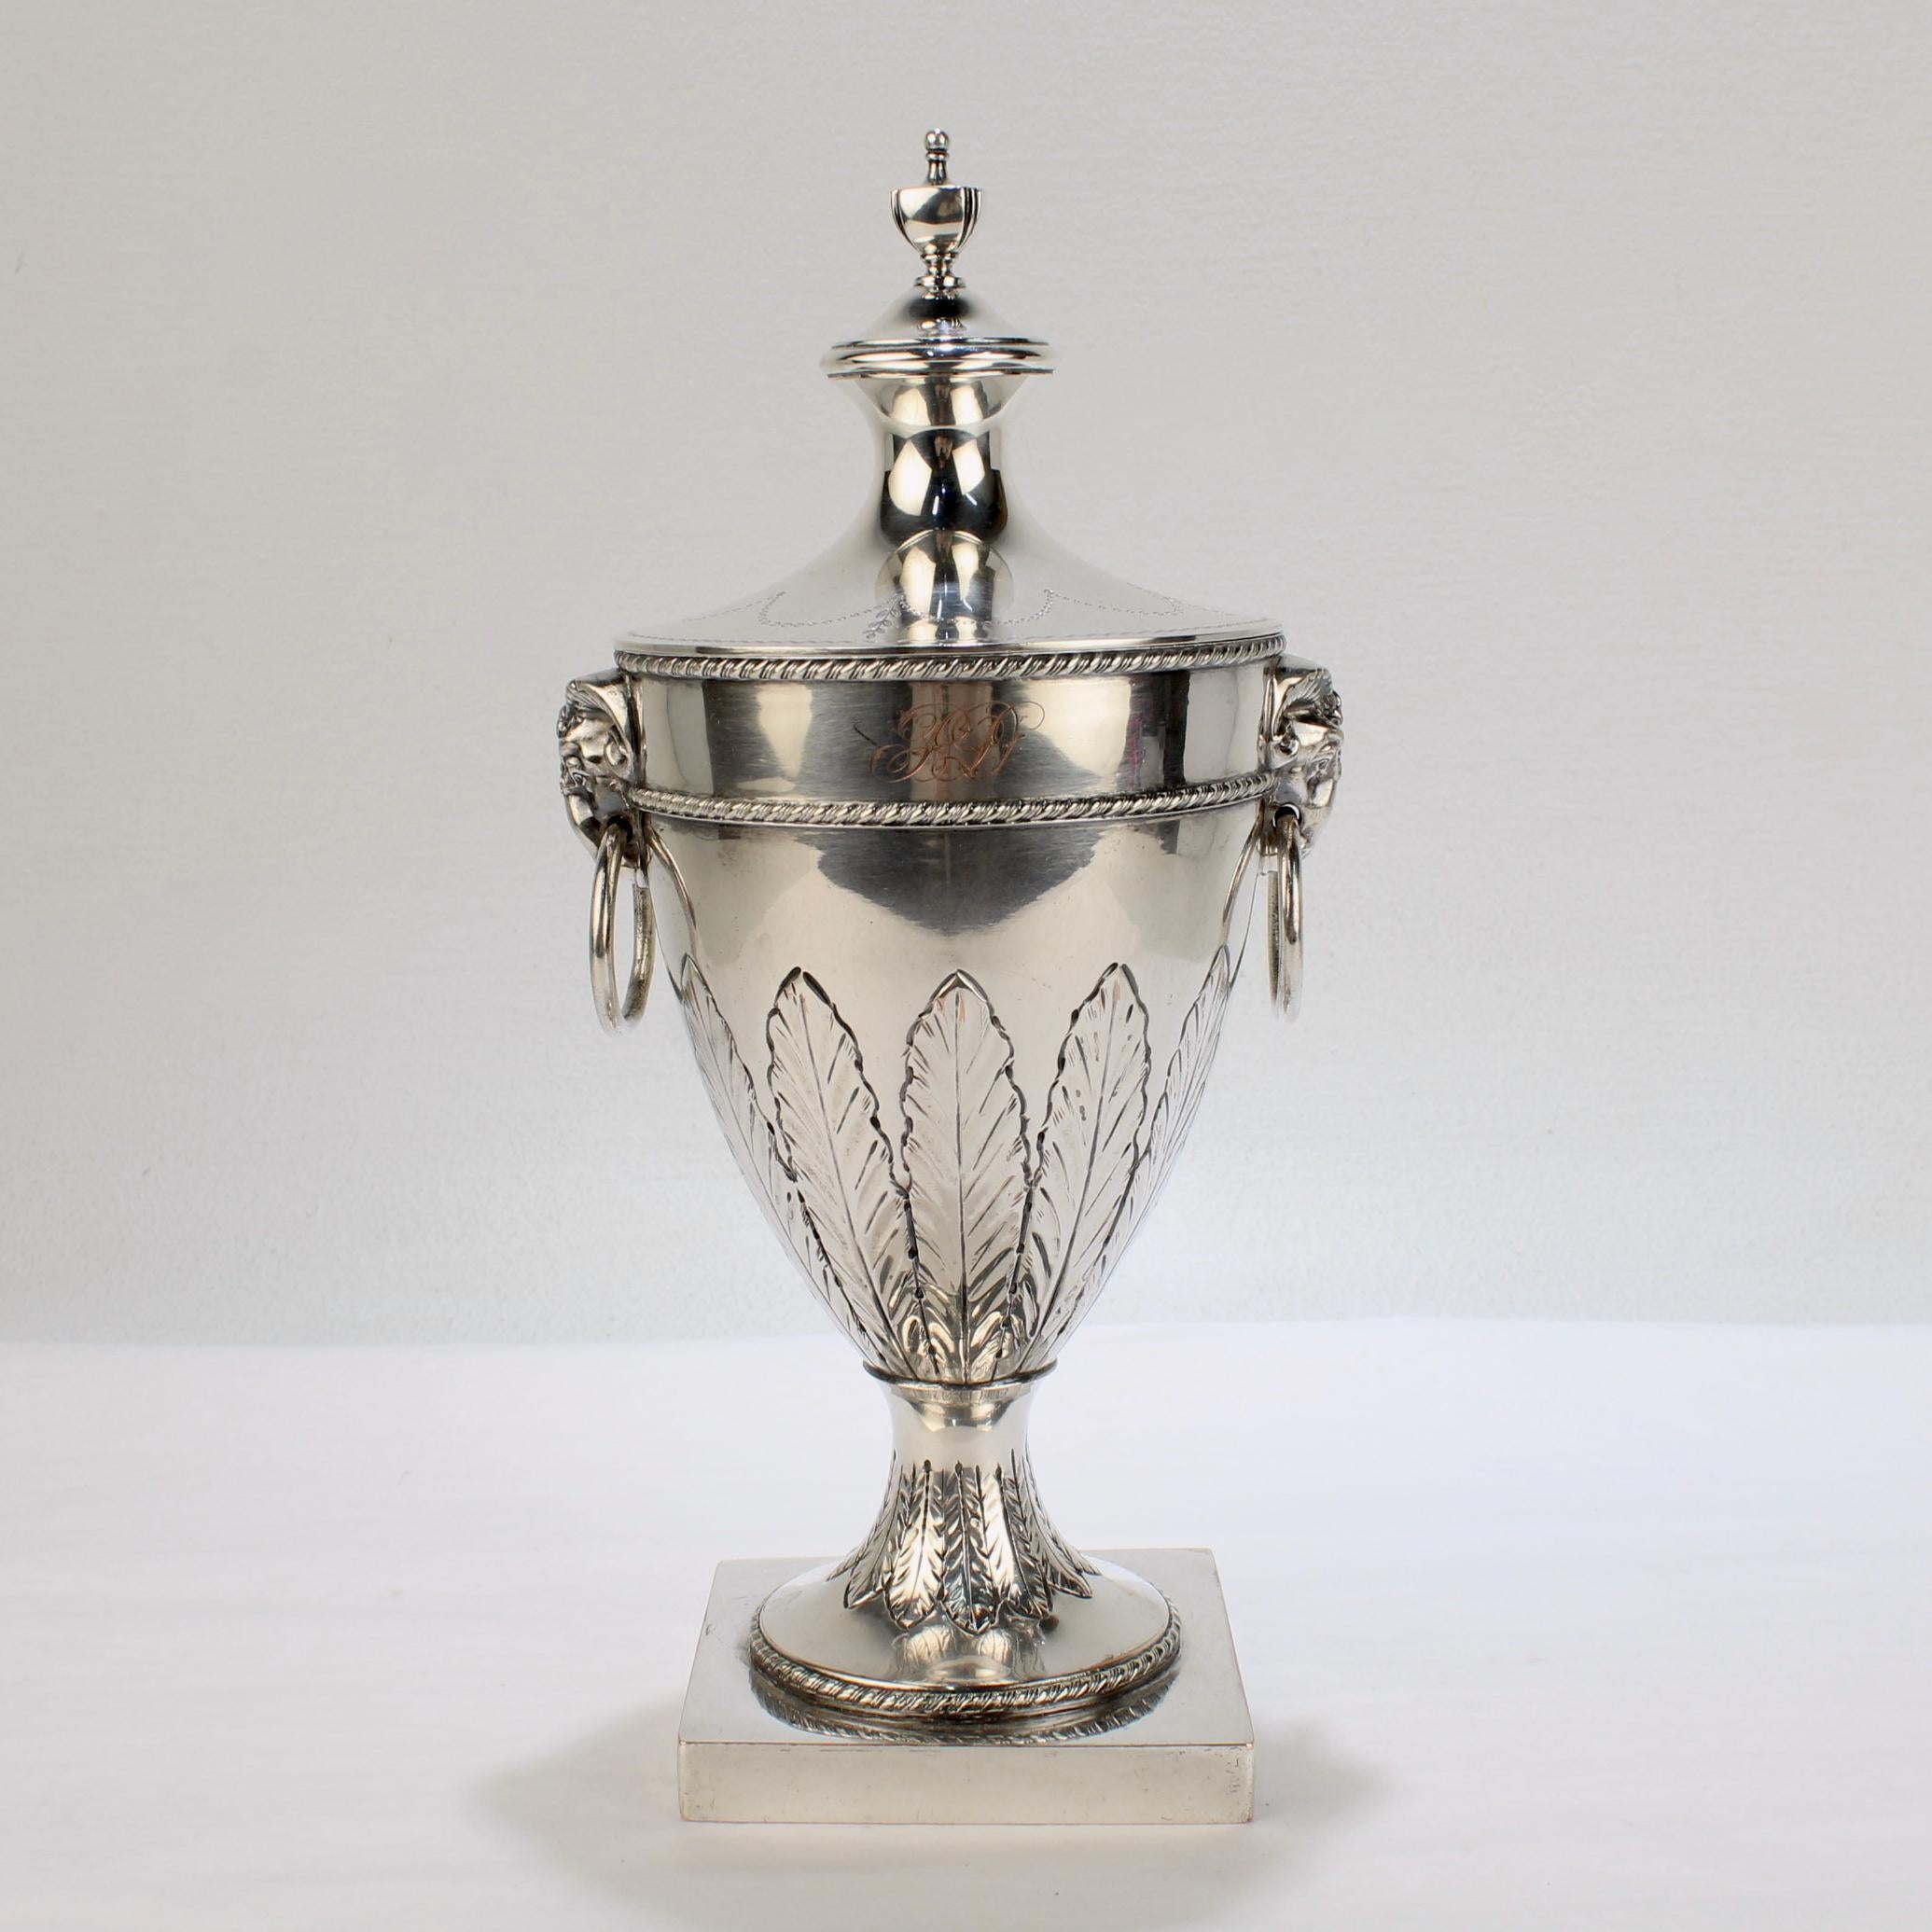 Un très beau vase anglais ancien en métal argenté et son couvercle. 

Dans le style néoclassique du 18e siècle de Sheffield.

Le vase a des anses en forme de tête de bélier et de boucle, un motif gravé de feuilles d'acanthe sur sa circonférence et